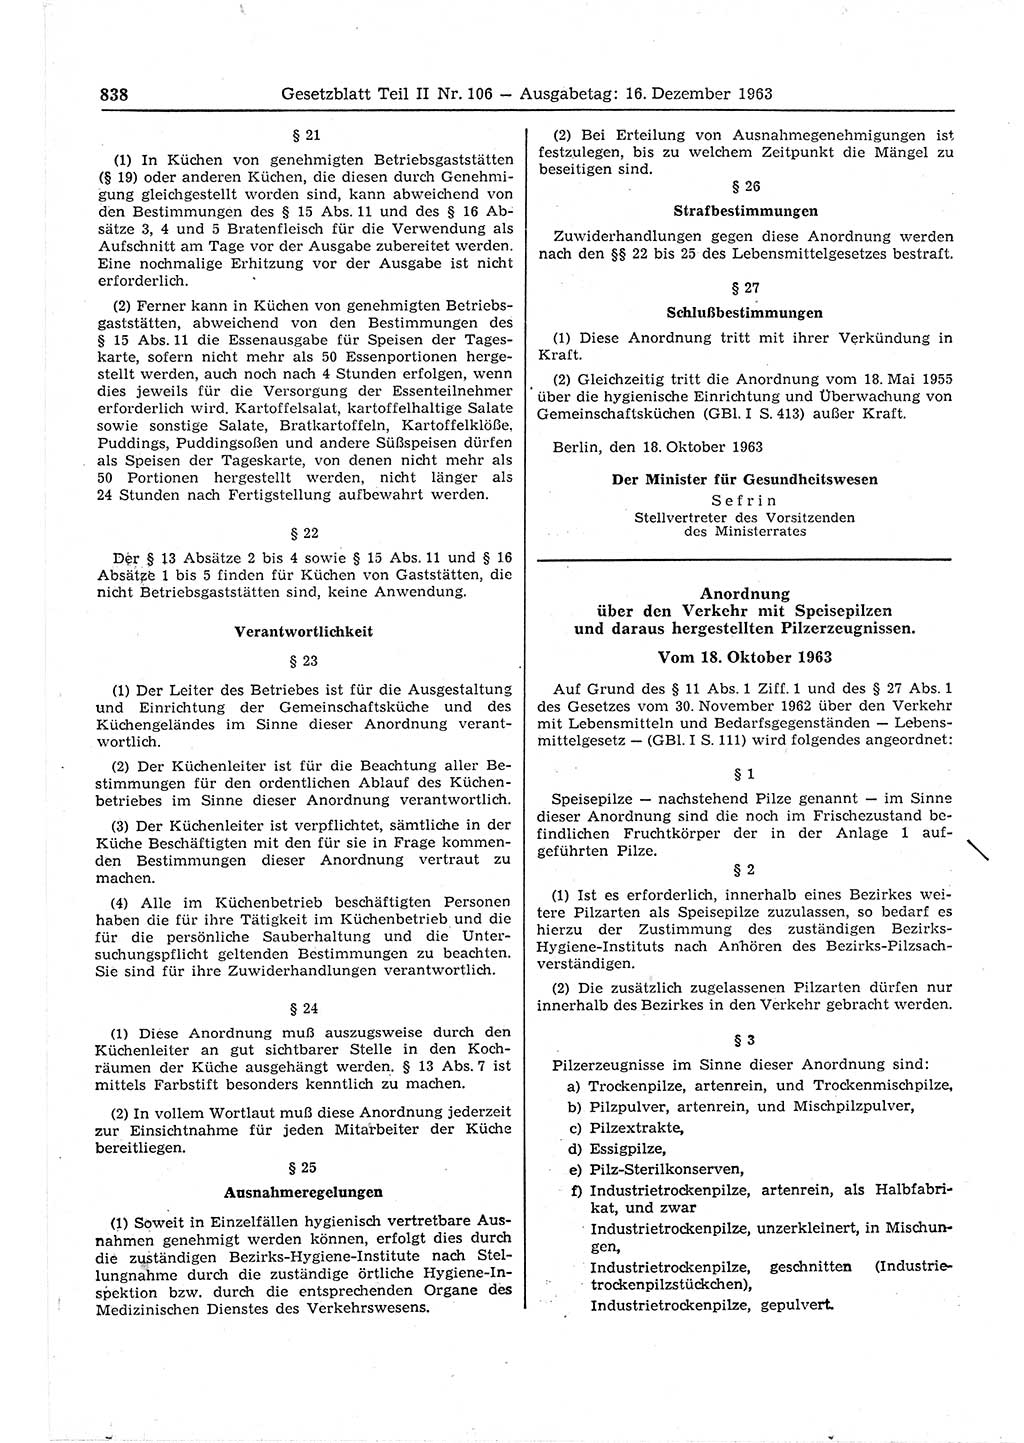 Gesetzblatt (GBl.) der Deutschen Demokratischen Republik (DDR) Teil ⅠⅠ 1963, Seite 838 (GBl. DDR ⅠⅠ 1963, S. 838)